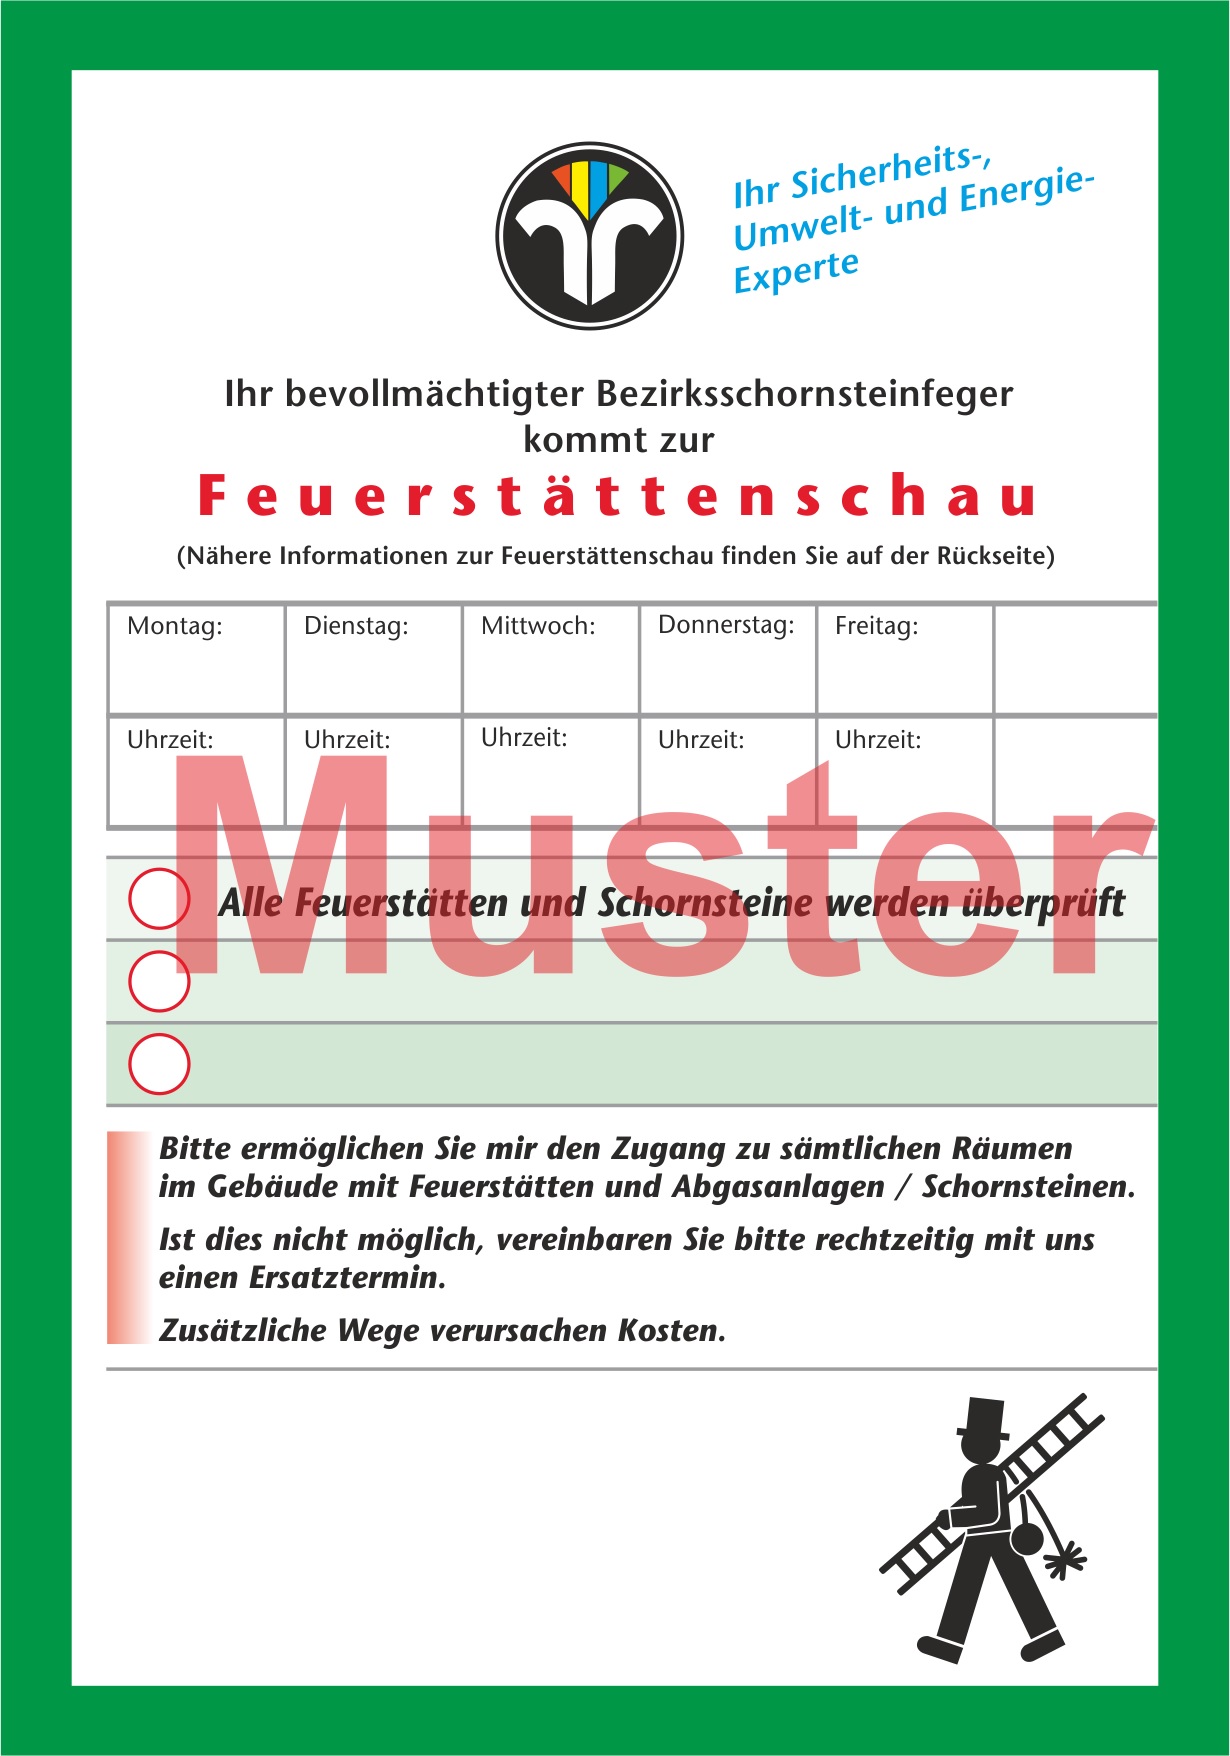 Ansagezettel "Feuerstättenschau" - DIN A6, ZIV-Logo, Rückseitendruck